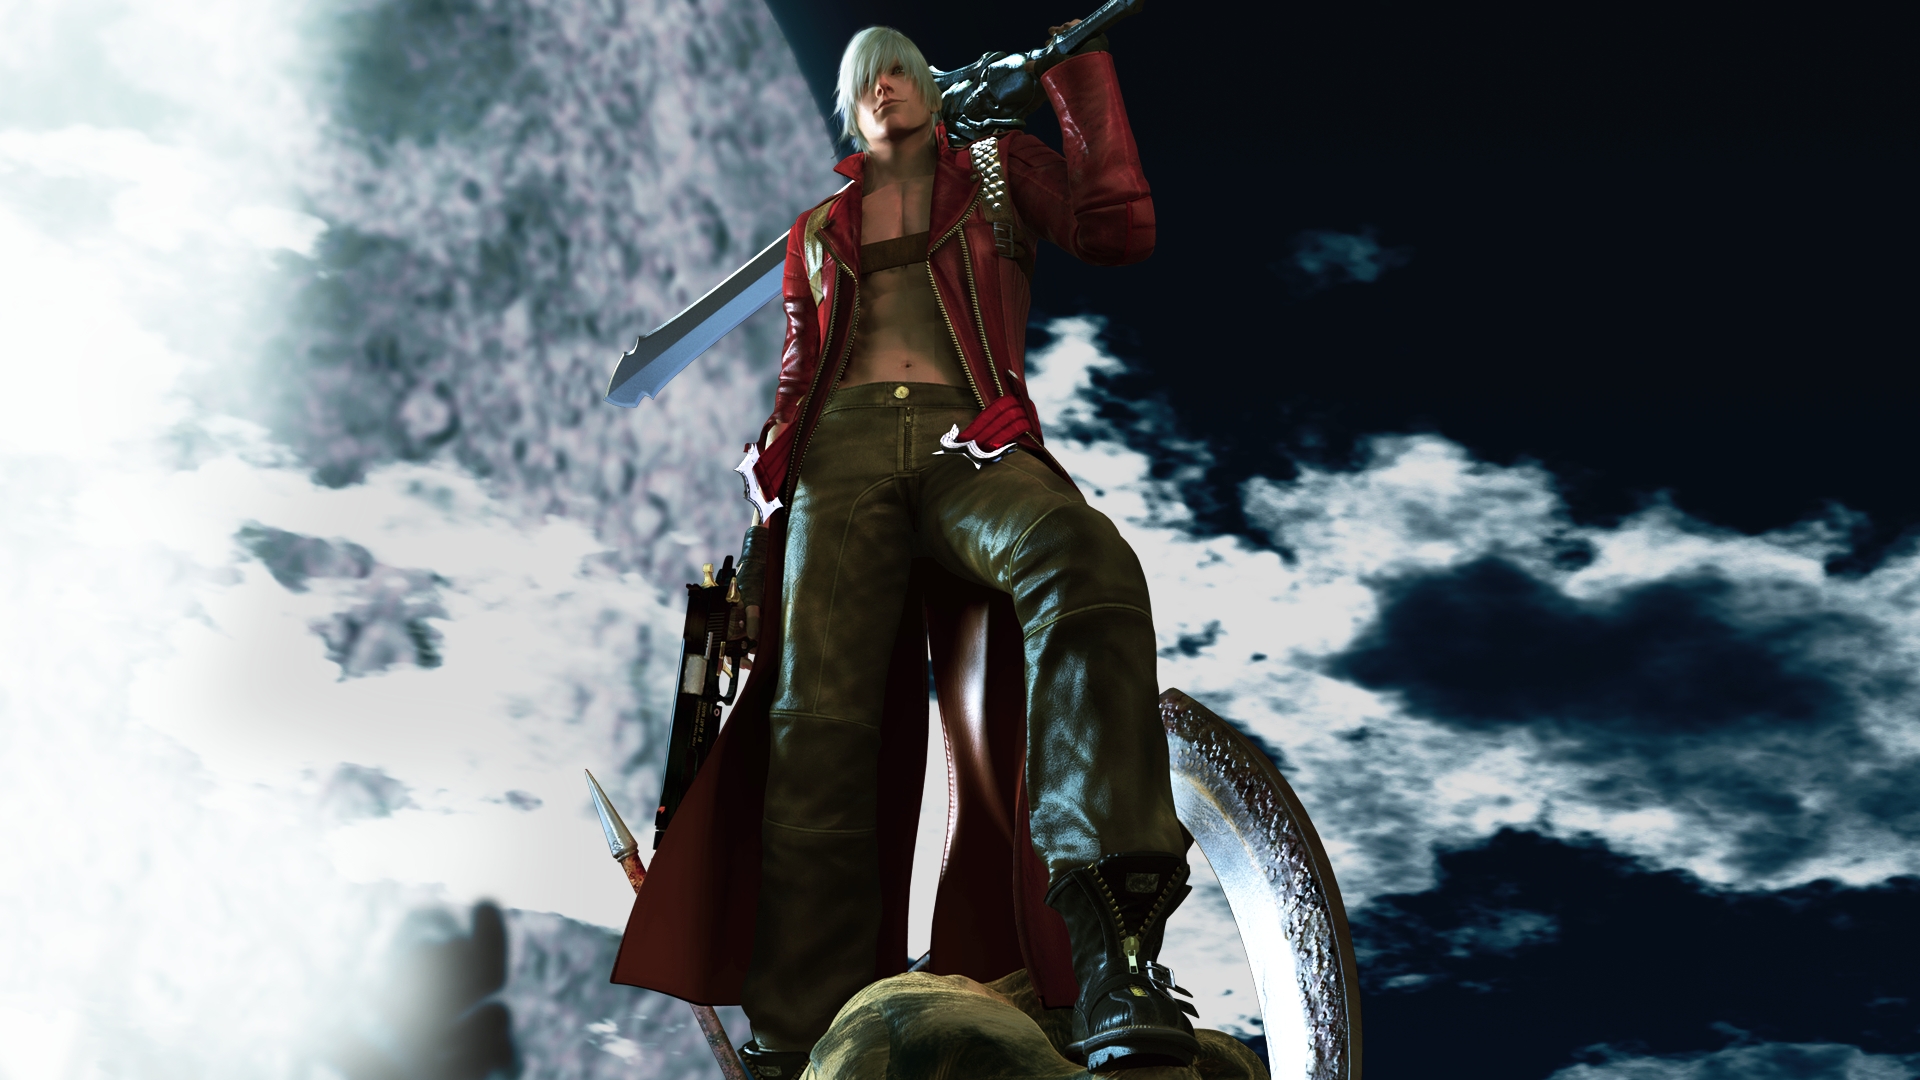 Devil May Cry 3 HD: Dante vs Vergil 2 